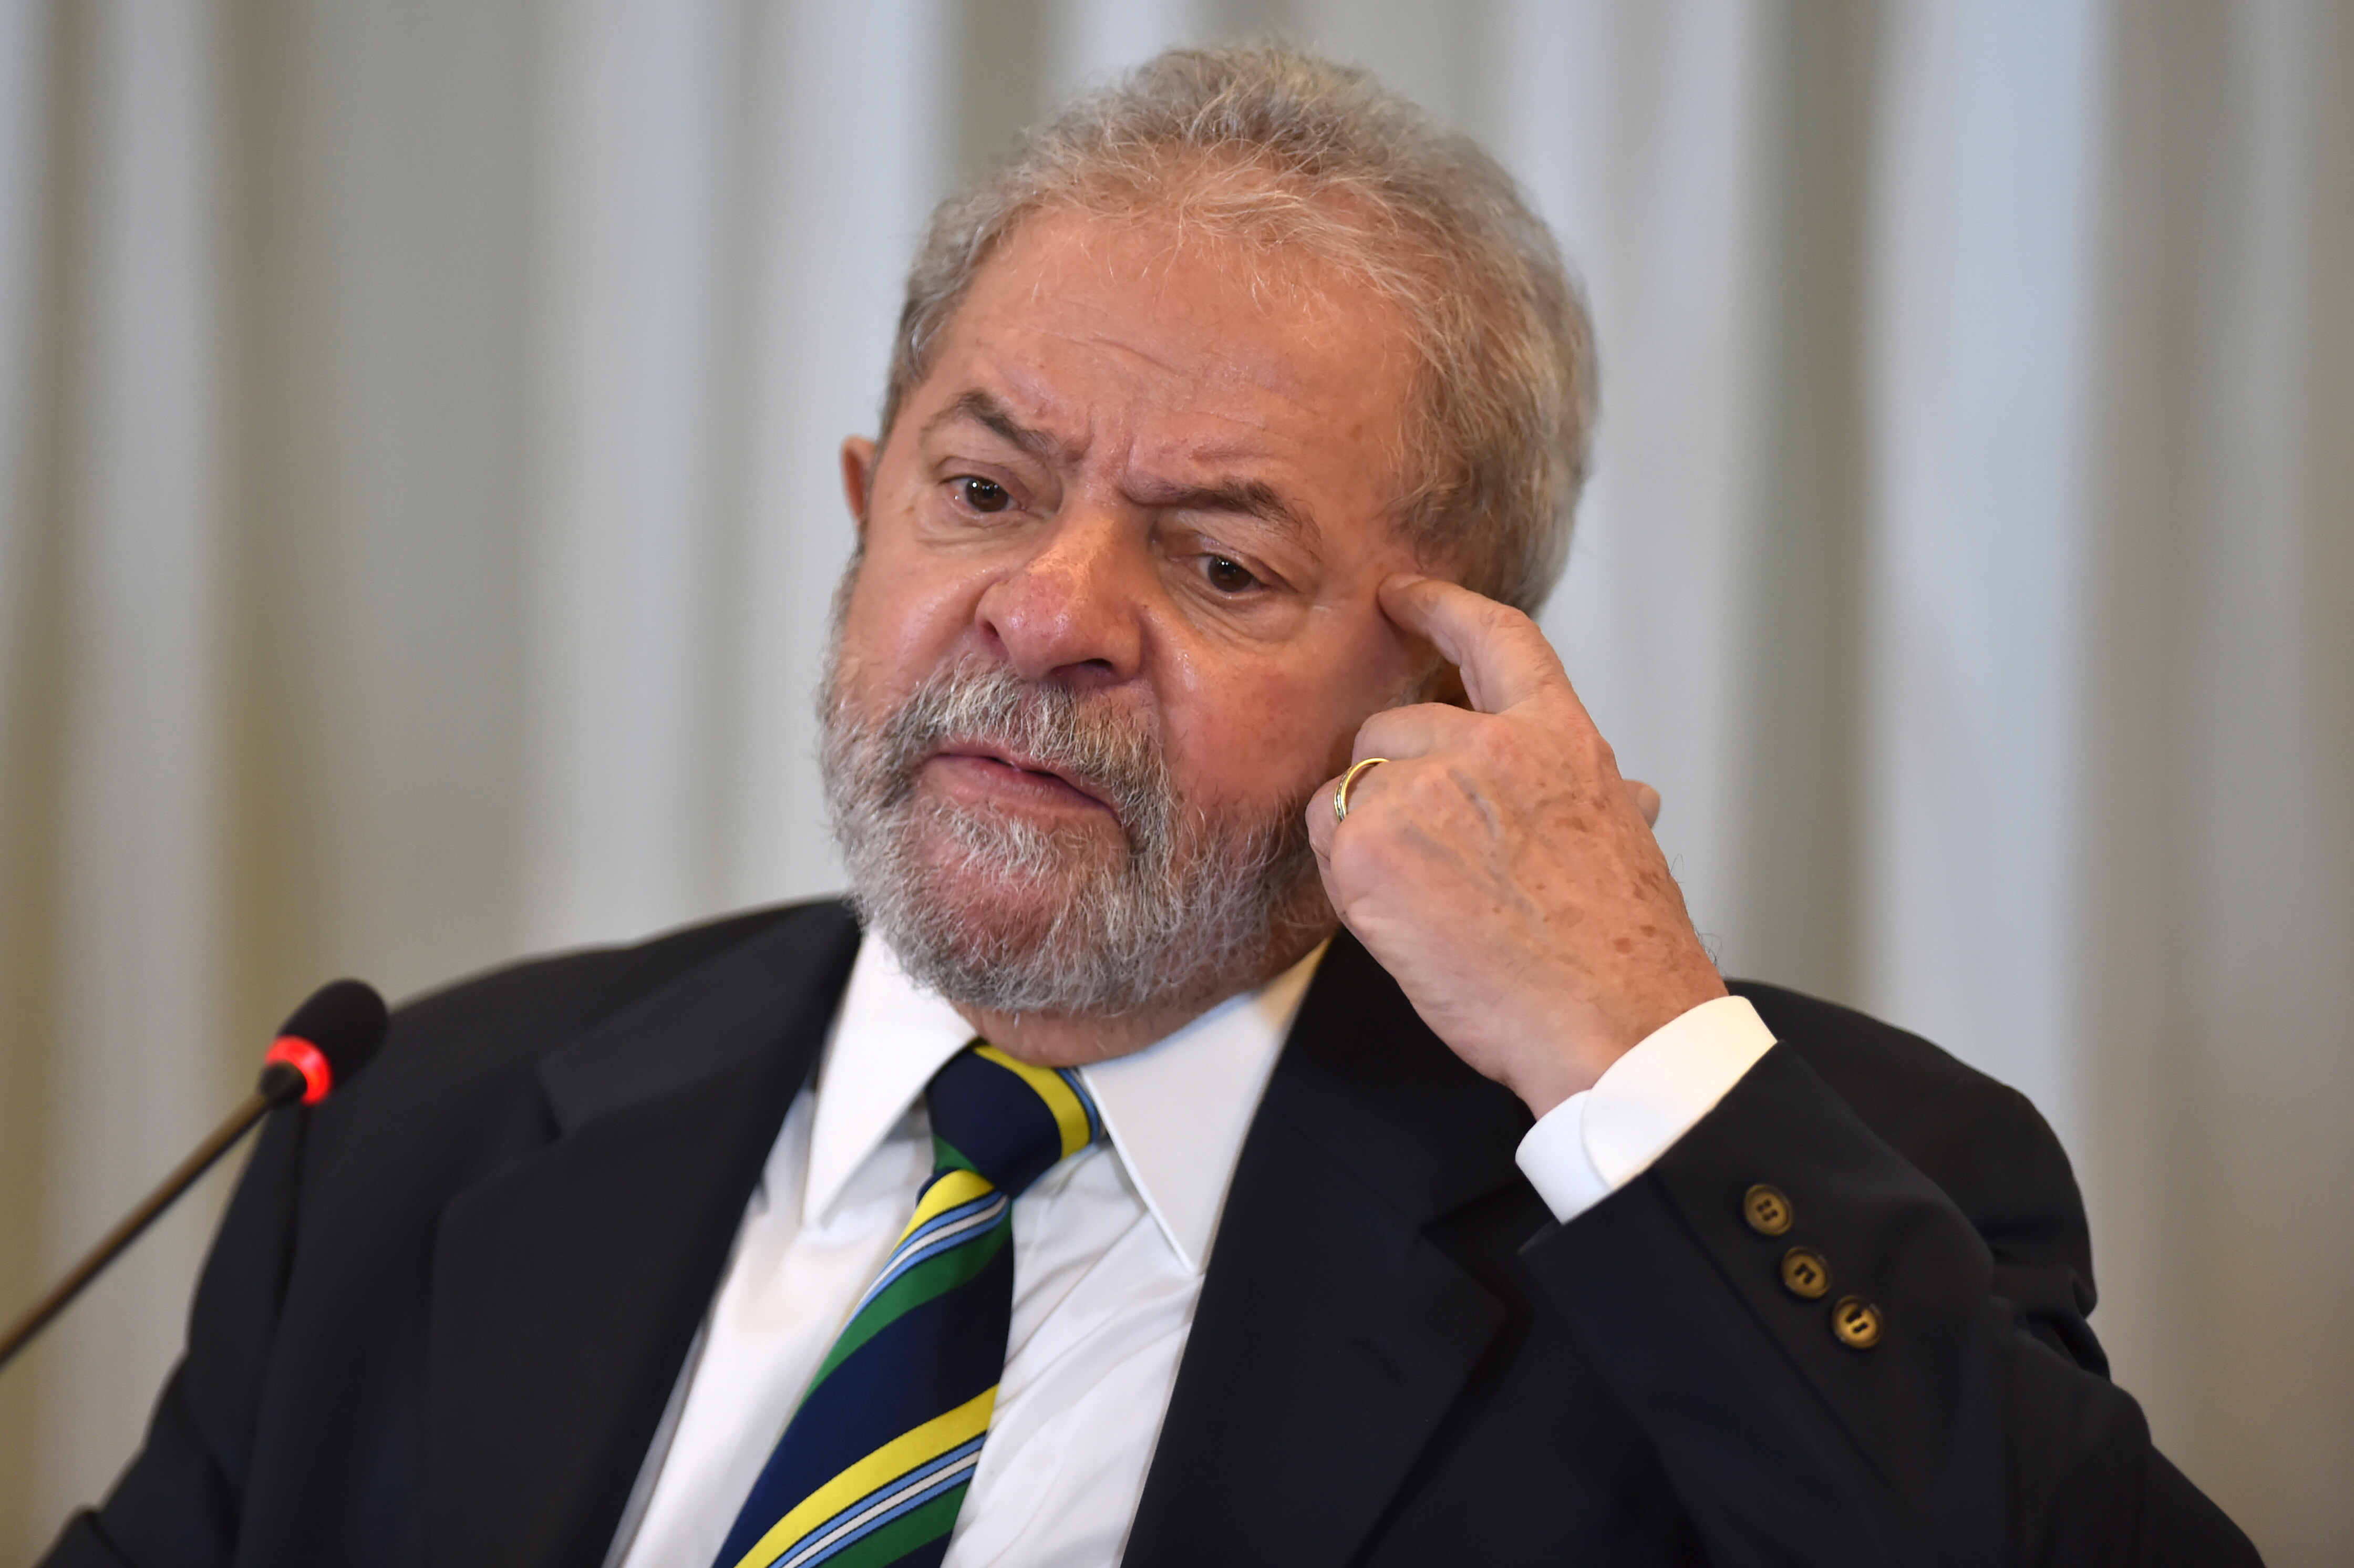 Justicia brasileña examinará caso con el que Lula da Silva podría ser enviado a prisión nuevamente